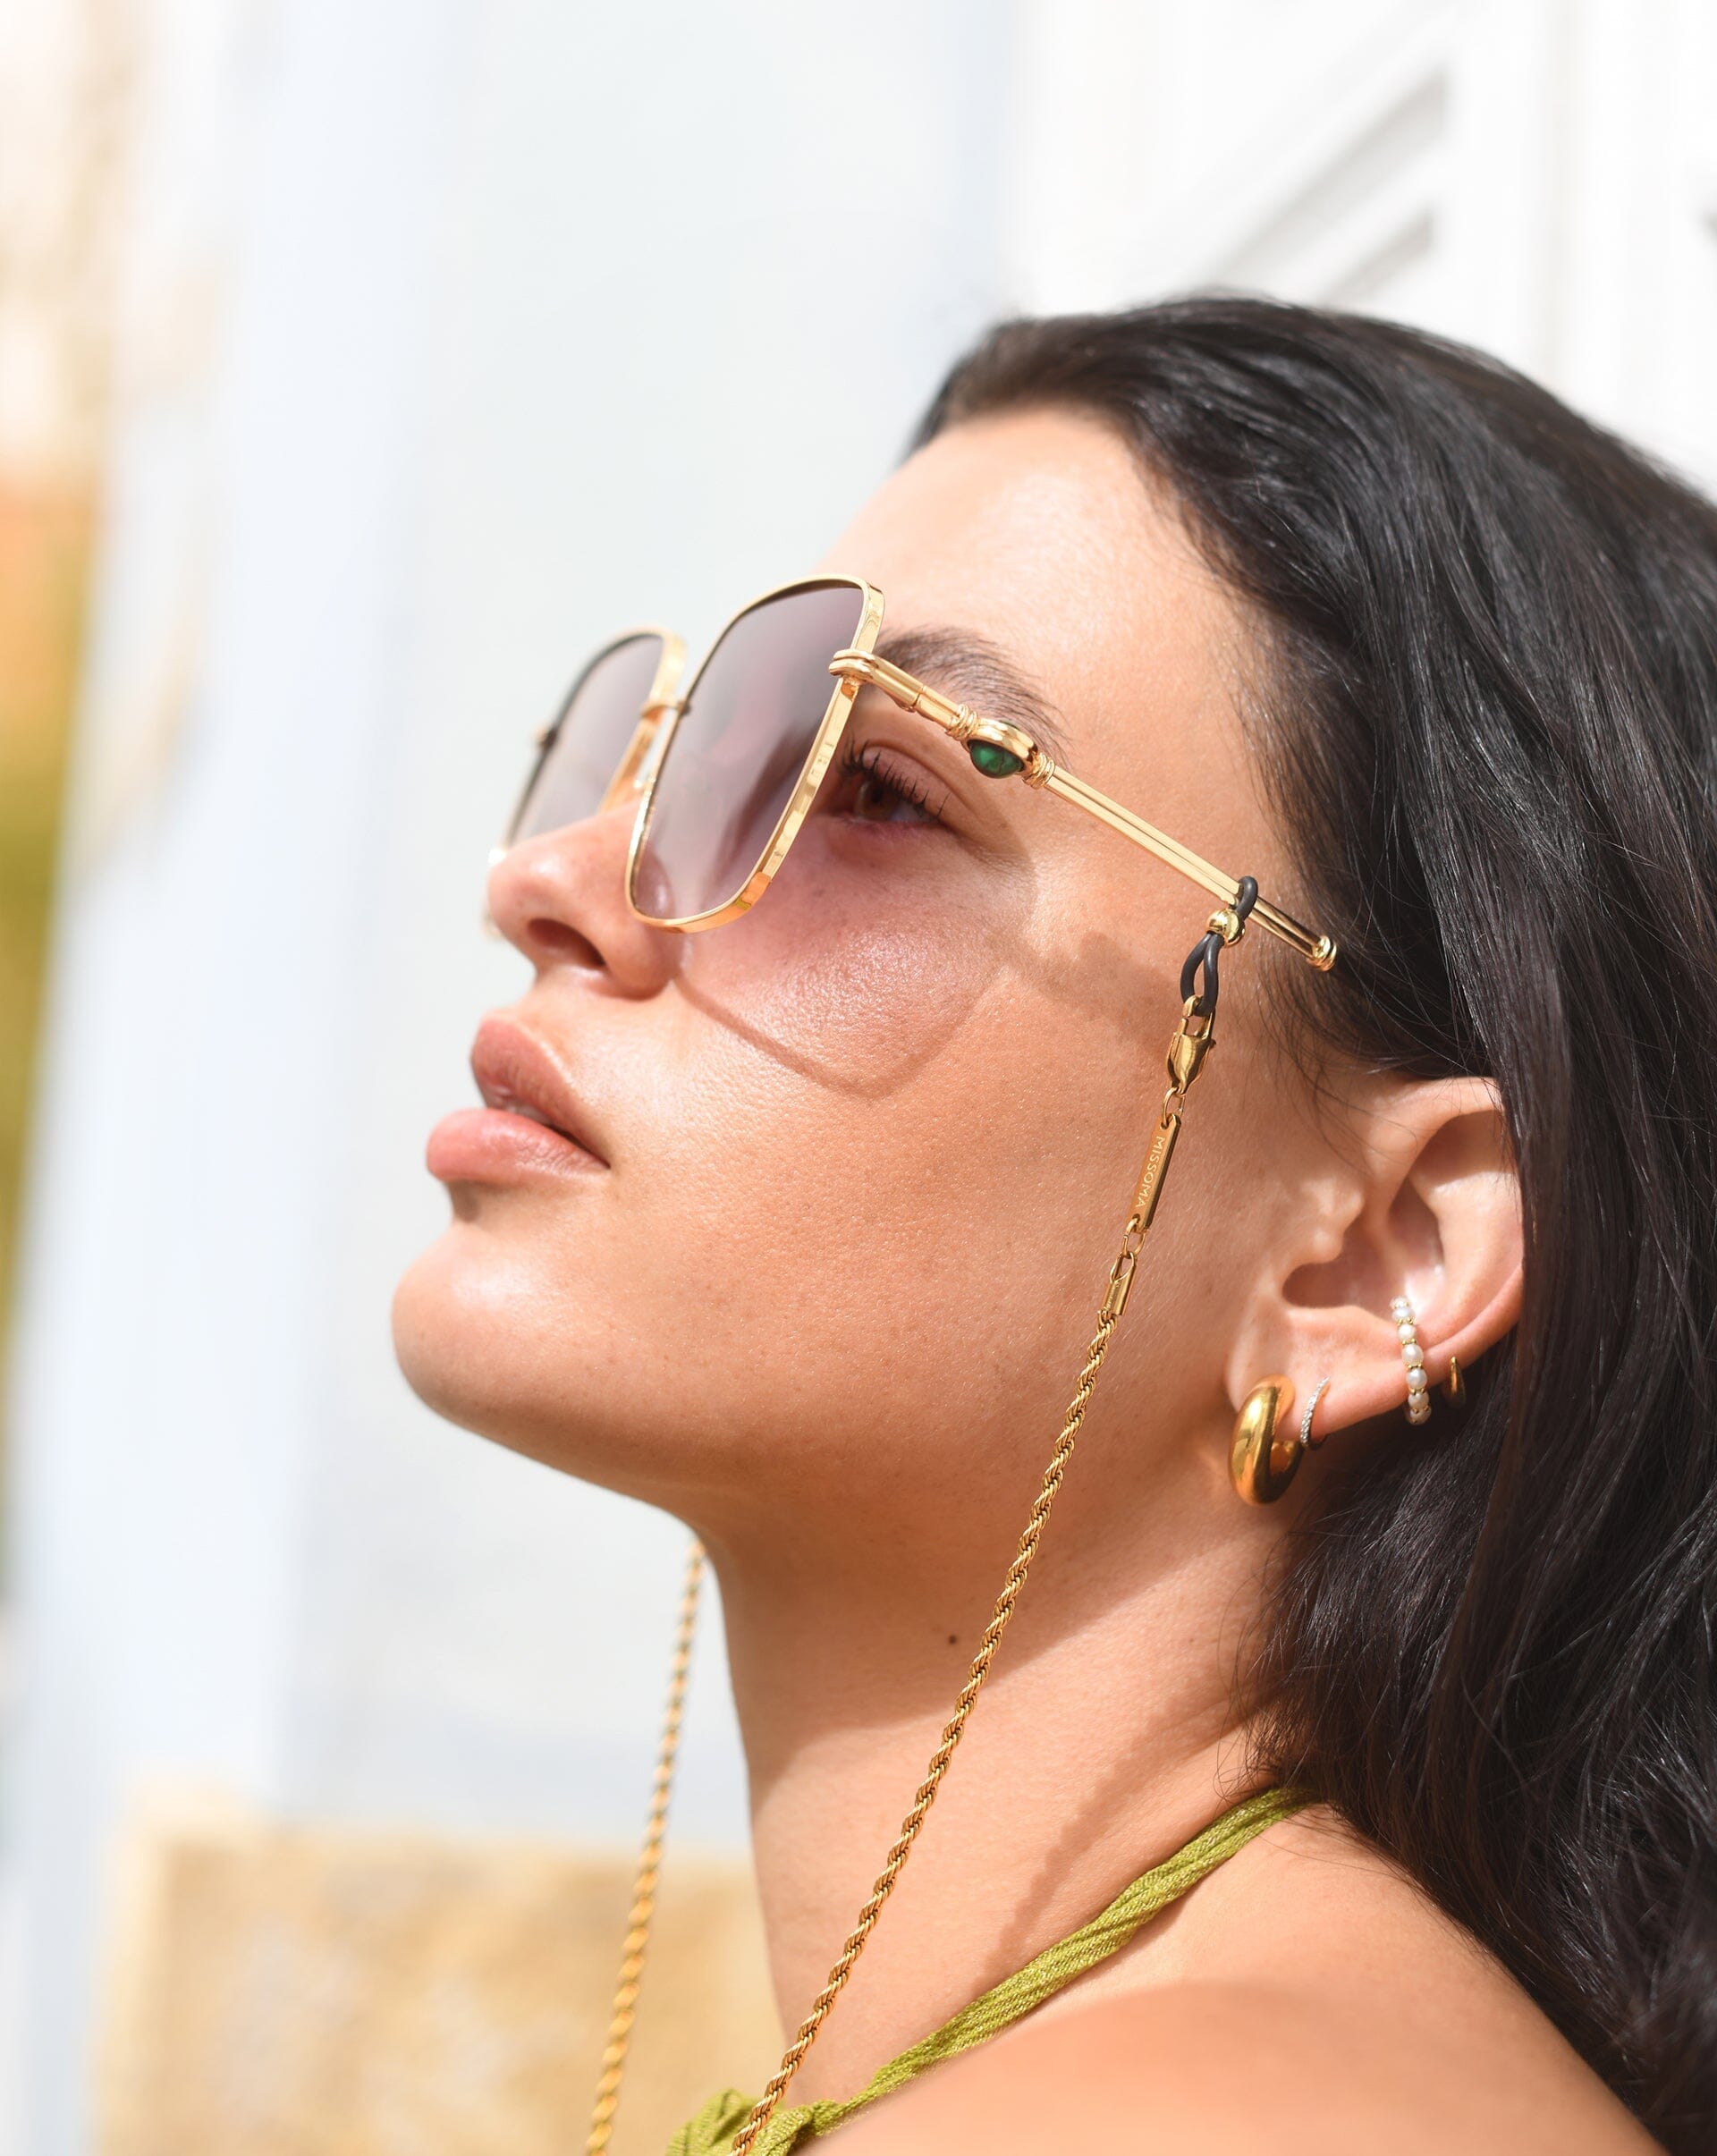 Le Specs Aquarius Sphere Oversized Square Sunglasses | Gold/Malachite Accessories Missoma 